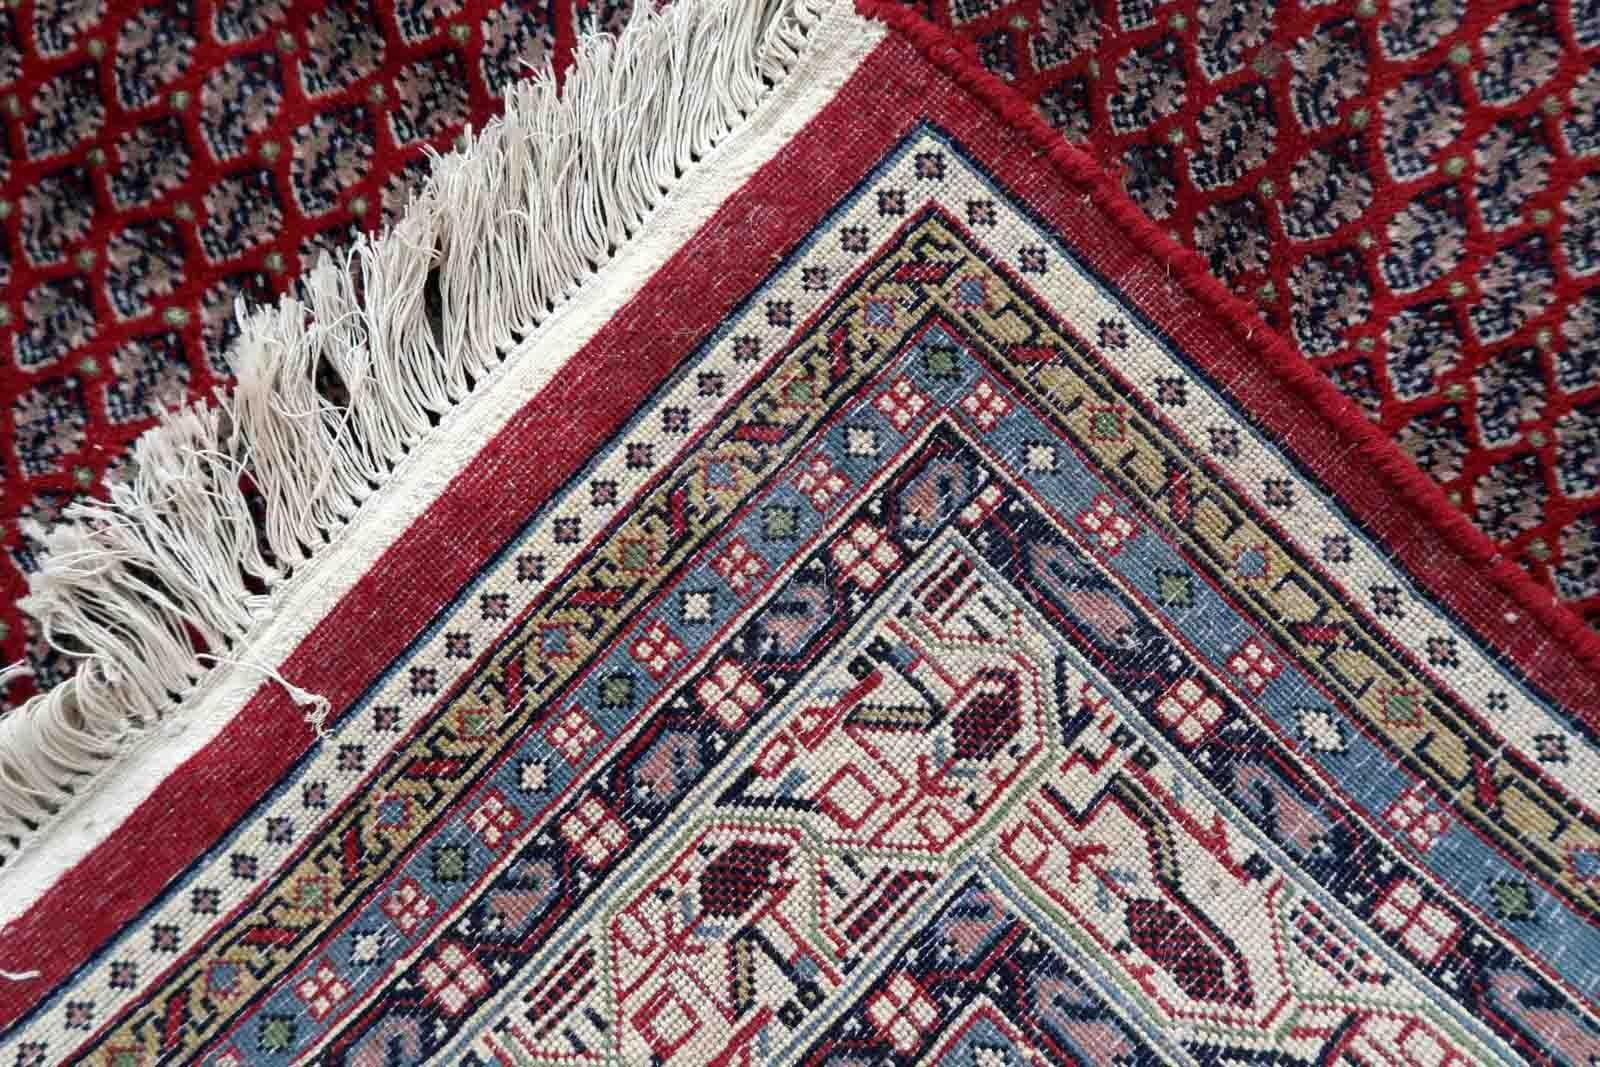 Handgefertigter indischer Seraband-Teppich mit wiederkehrendem Muster und rotem Farbton. Der Teppich stammt aus dem Ende des 20. Jahrhunderts und ist in gutem Originalzustand.

-Zustand: original gut,

-Umgebung: 1970er Jahre,

-Größe: 6,6' x 8,2'